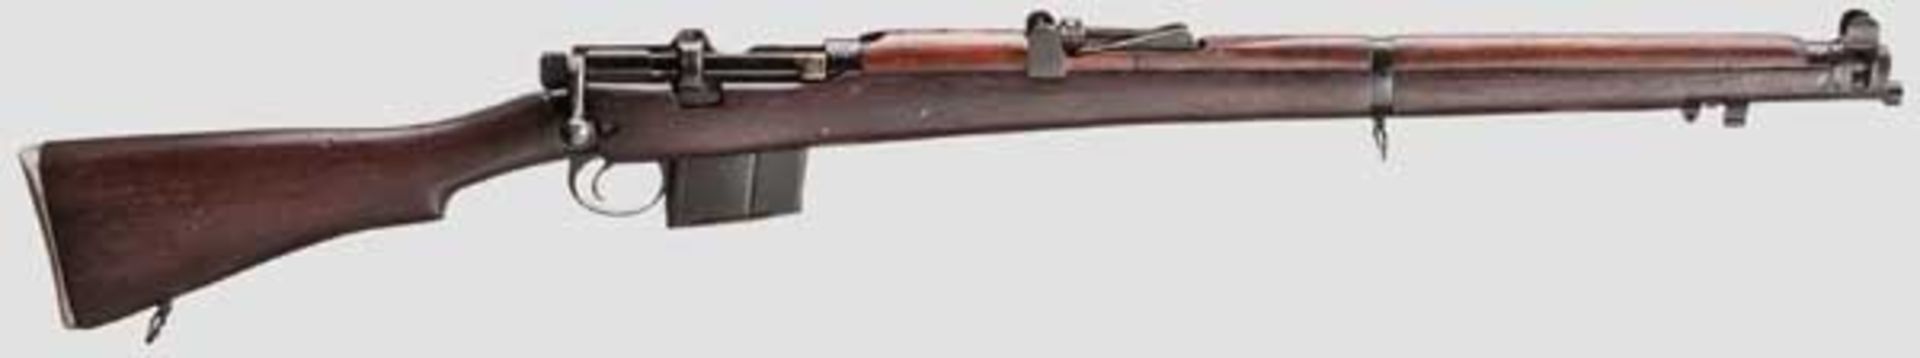 Enfield (SMLE) Rifle 2 A 1, Indien Kal. .308 Win., Nr. AD7924. Nummerngleich. Lauf eingefettet.